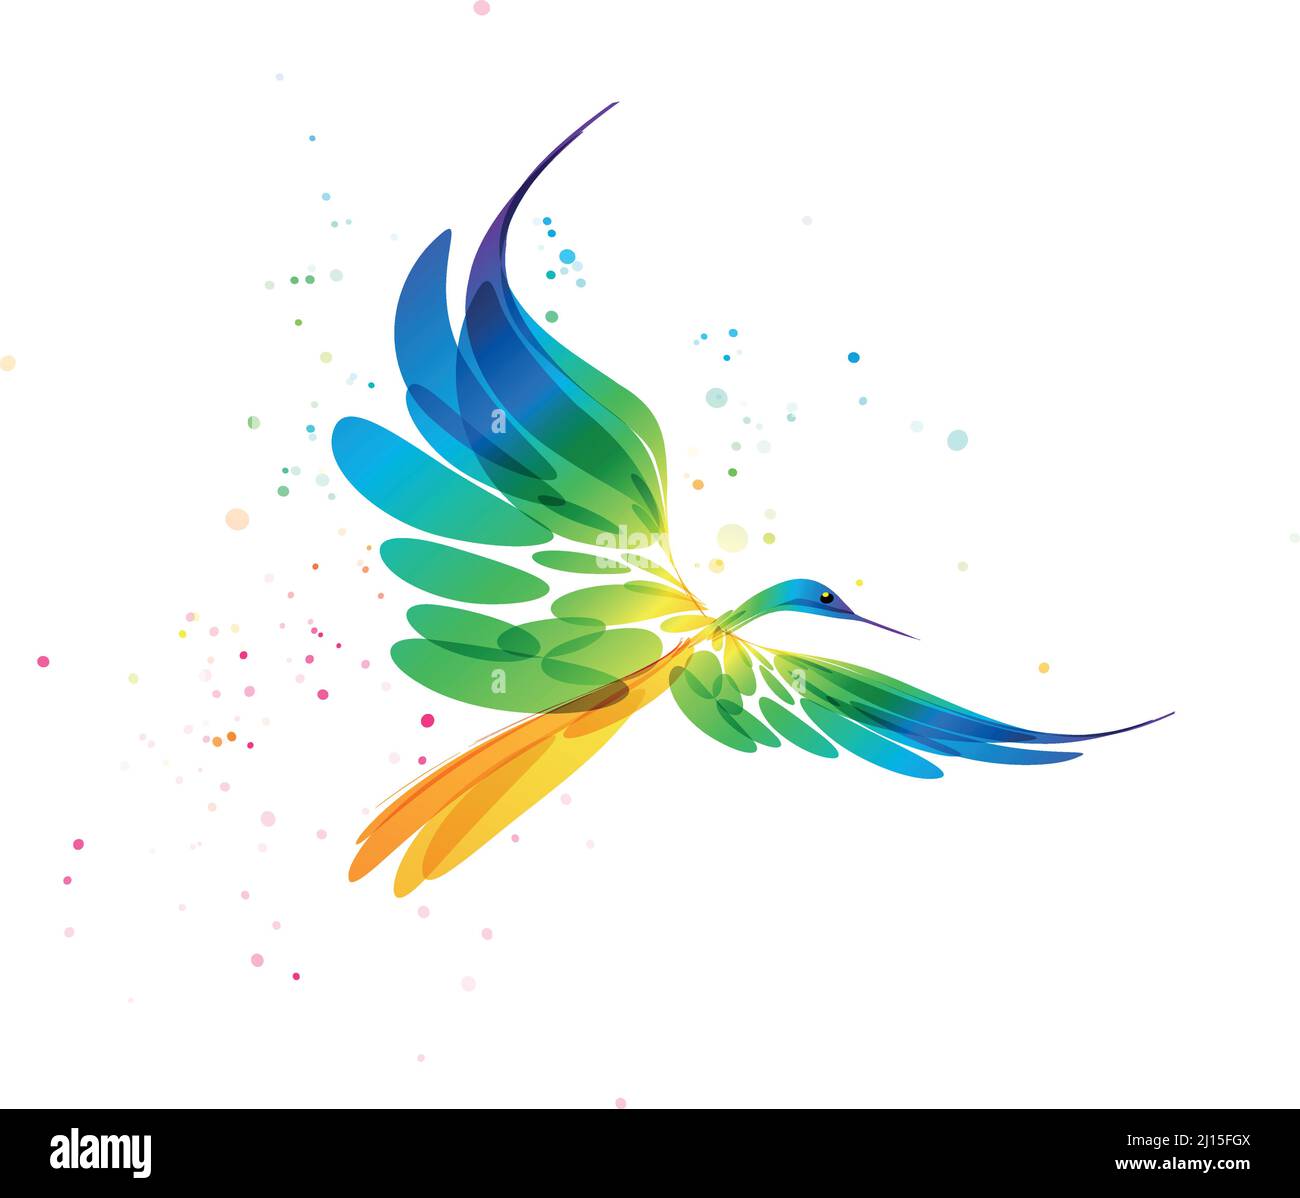 Arte stilizzata degli uccelli, uccello colorato su sfondo bianco, uccello fantasy in volo, uccello grafico astratto, immagine vettoriale a colori Illustrazione Vettoriale